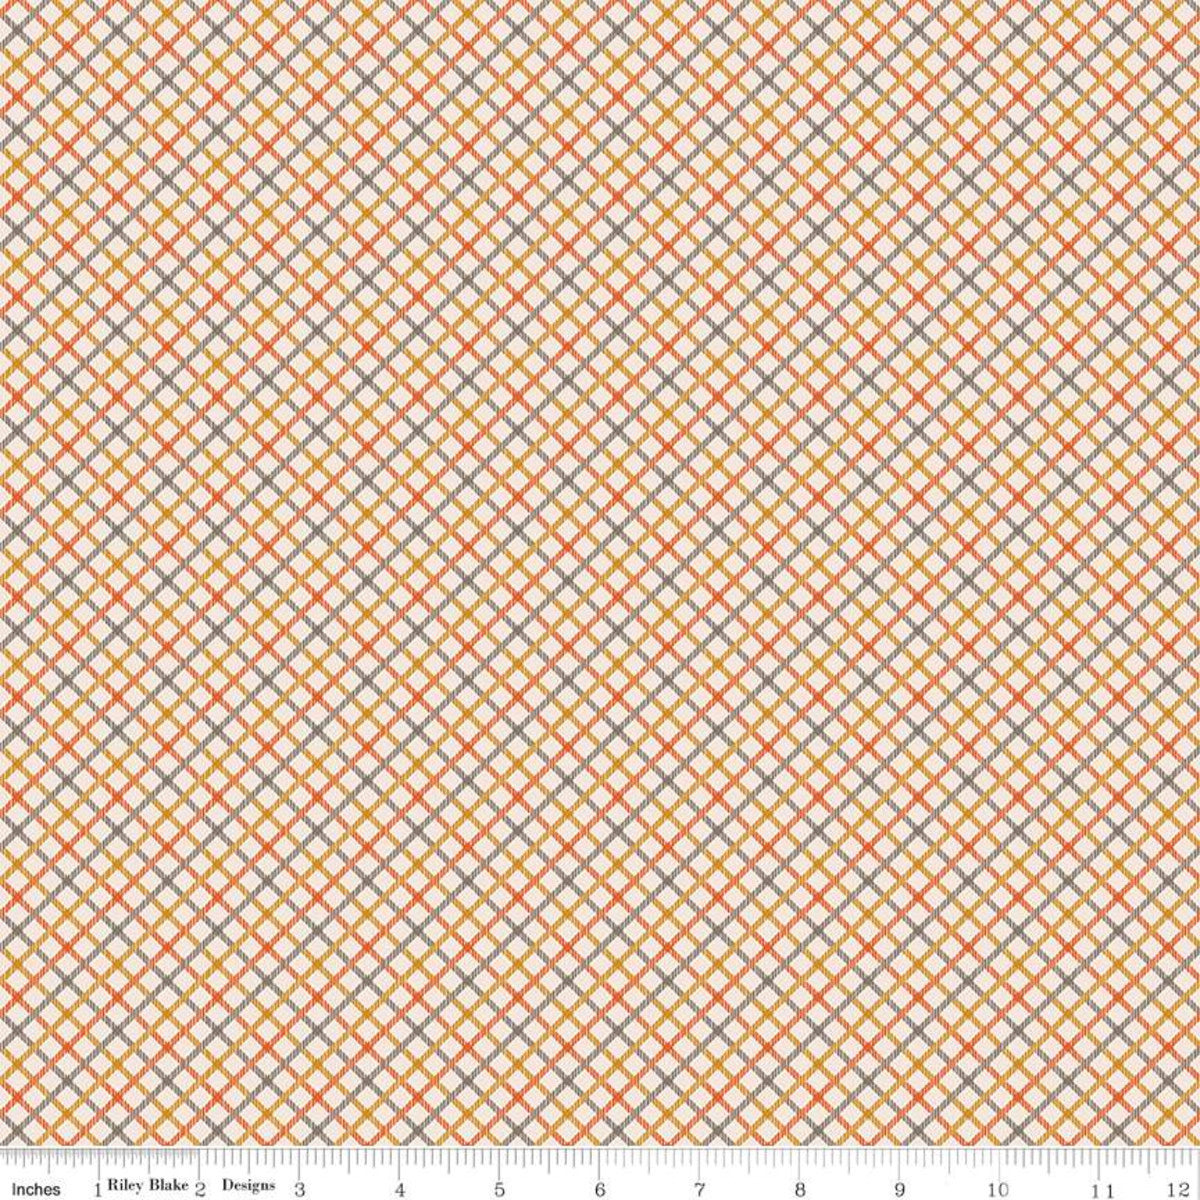 Prim Quilt Fabric by Lori Holt - Homespun Plaid in Autumn Multi - C9699-AUTUMN